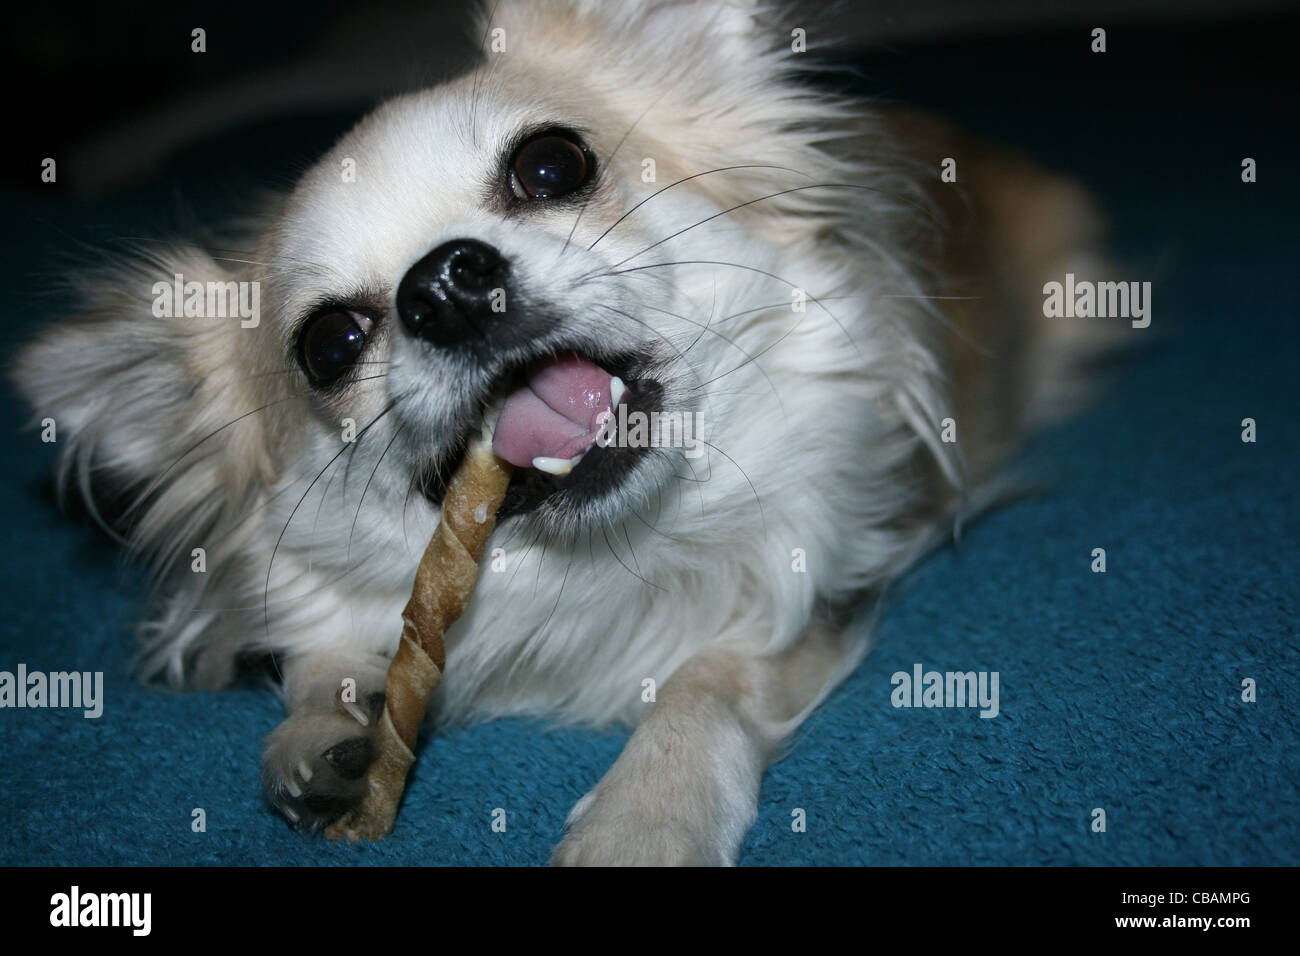 Langhaar Chihuahua oder mexikanische Hund mit zäh Stick auf blaue Decke Stockfoto